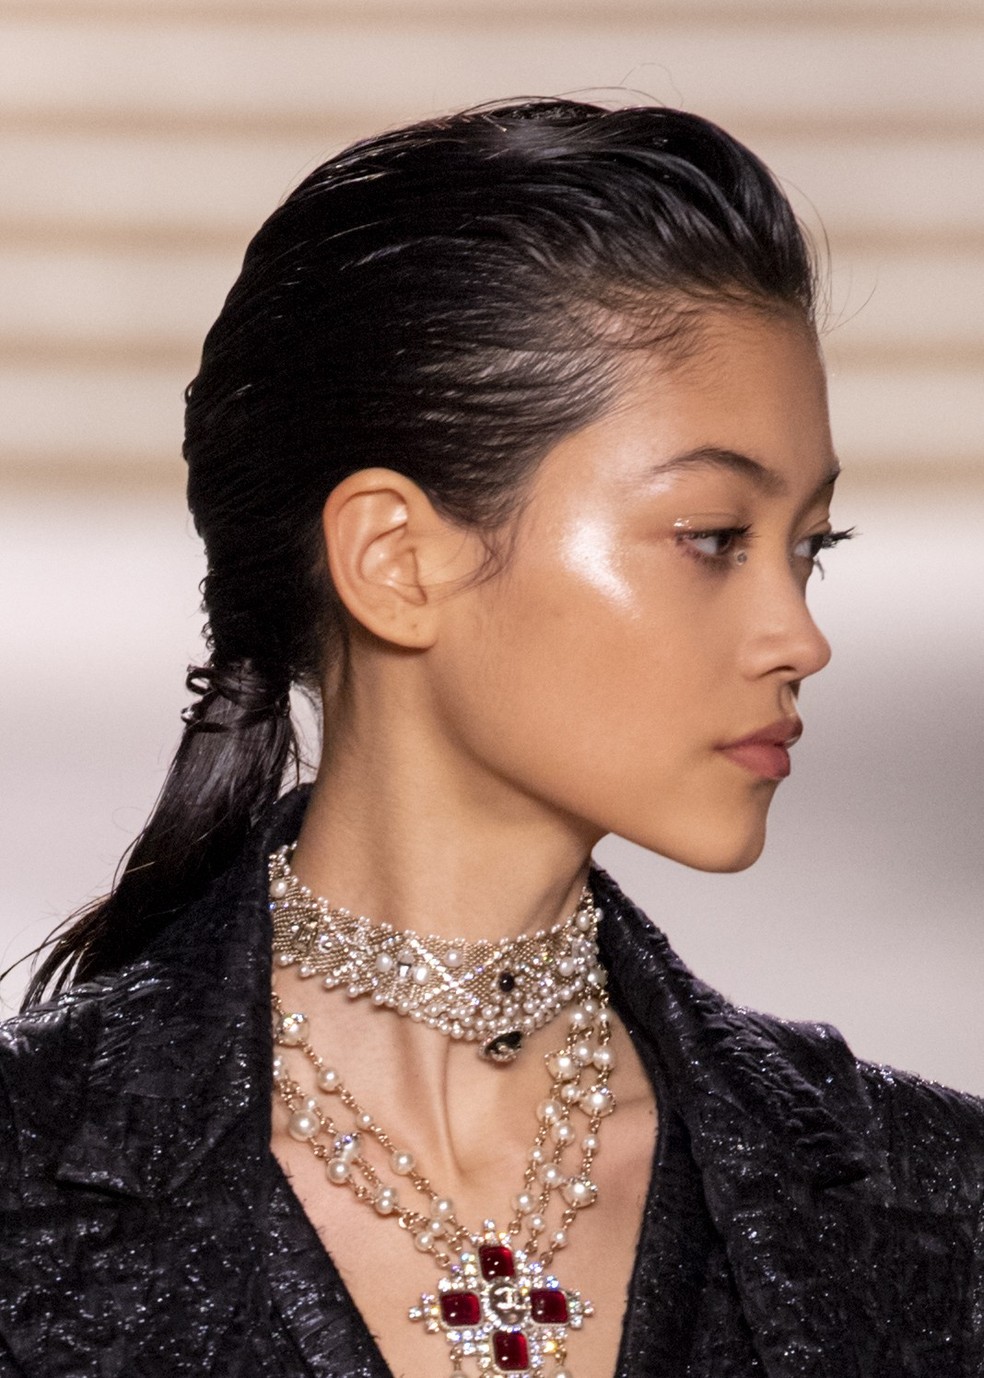 5 dicas de beleza para as festas de fim de ano saídas da passarela de Métiers d'art da Chanel (Foto: WireImage) — Foto: Vogue